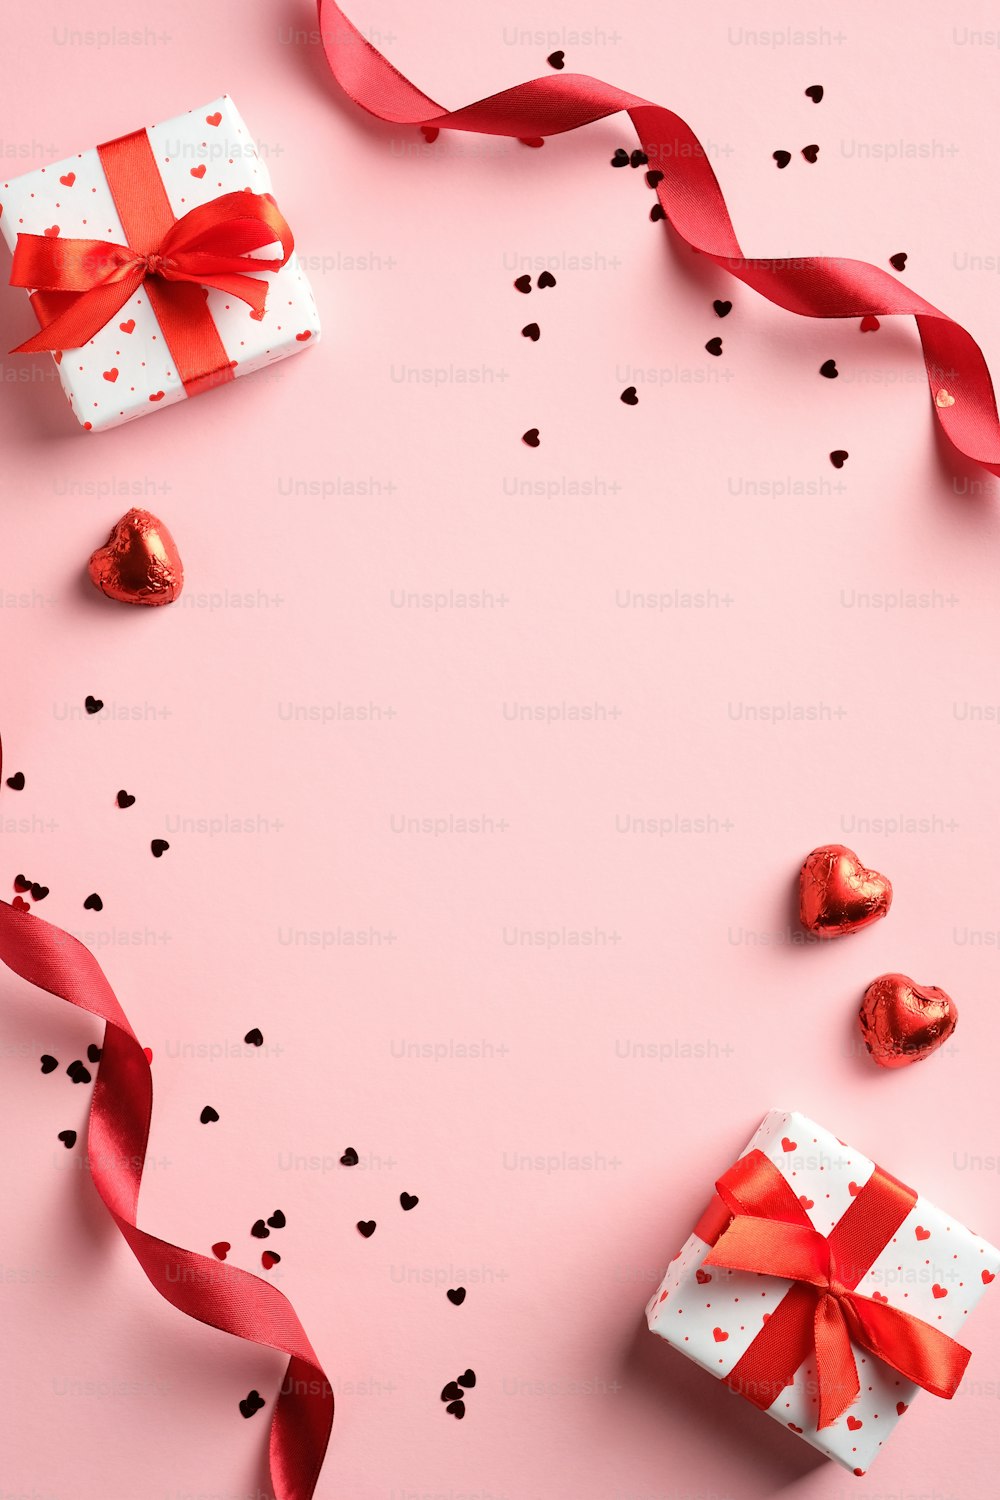 ピンクの背景に赤いリボン、ギフト、紙吹雪とバレンタインデーのフラットレイ組成。縦型バナー、チラシ、パンフレット、ソーシャルメディアのストーリーに適しています